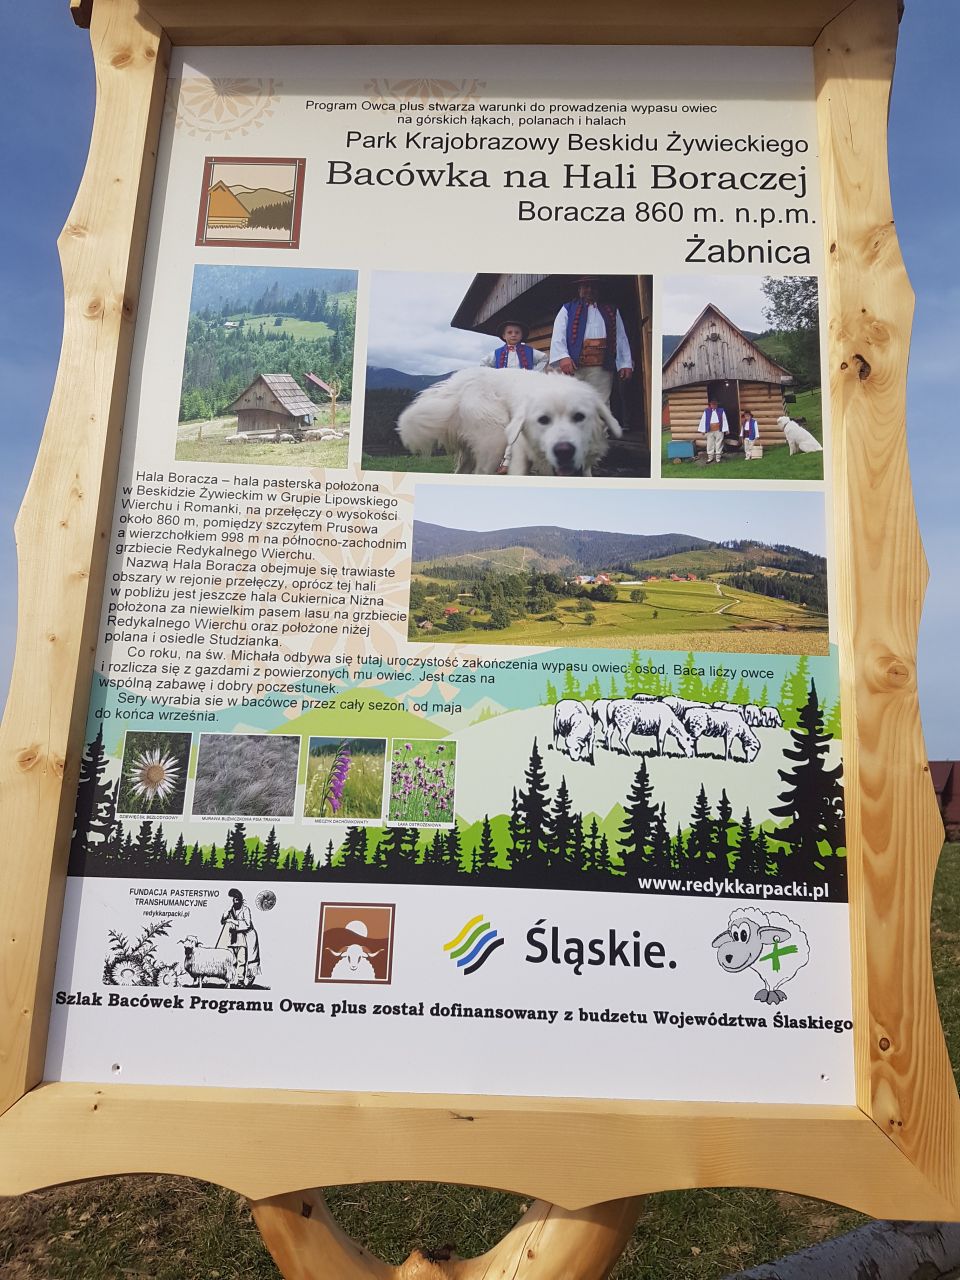 Хала Борача також є однією з найкращих відправних точок для навколишніх гірських хребтів